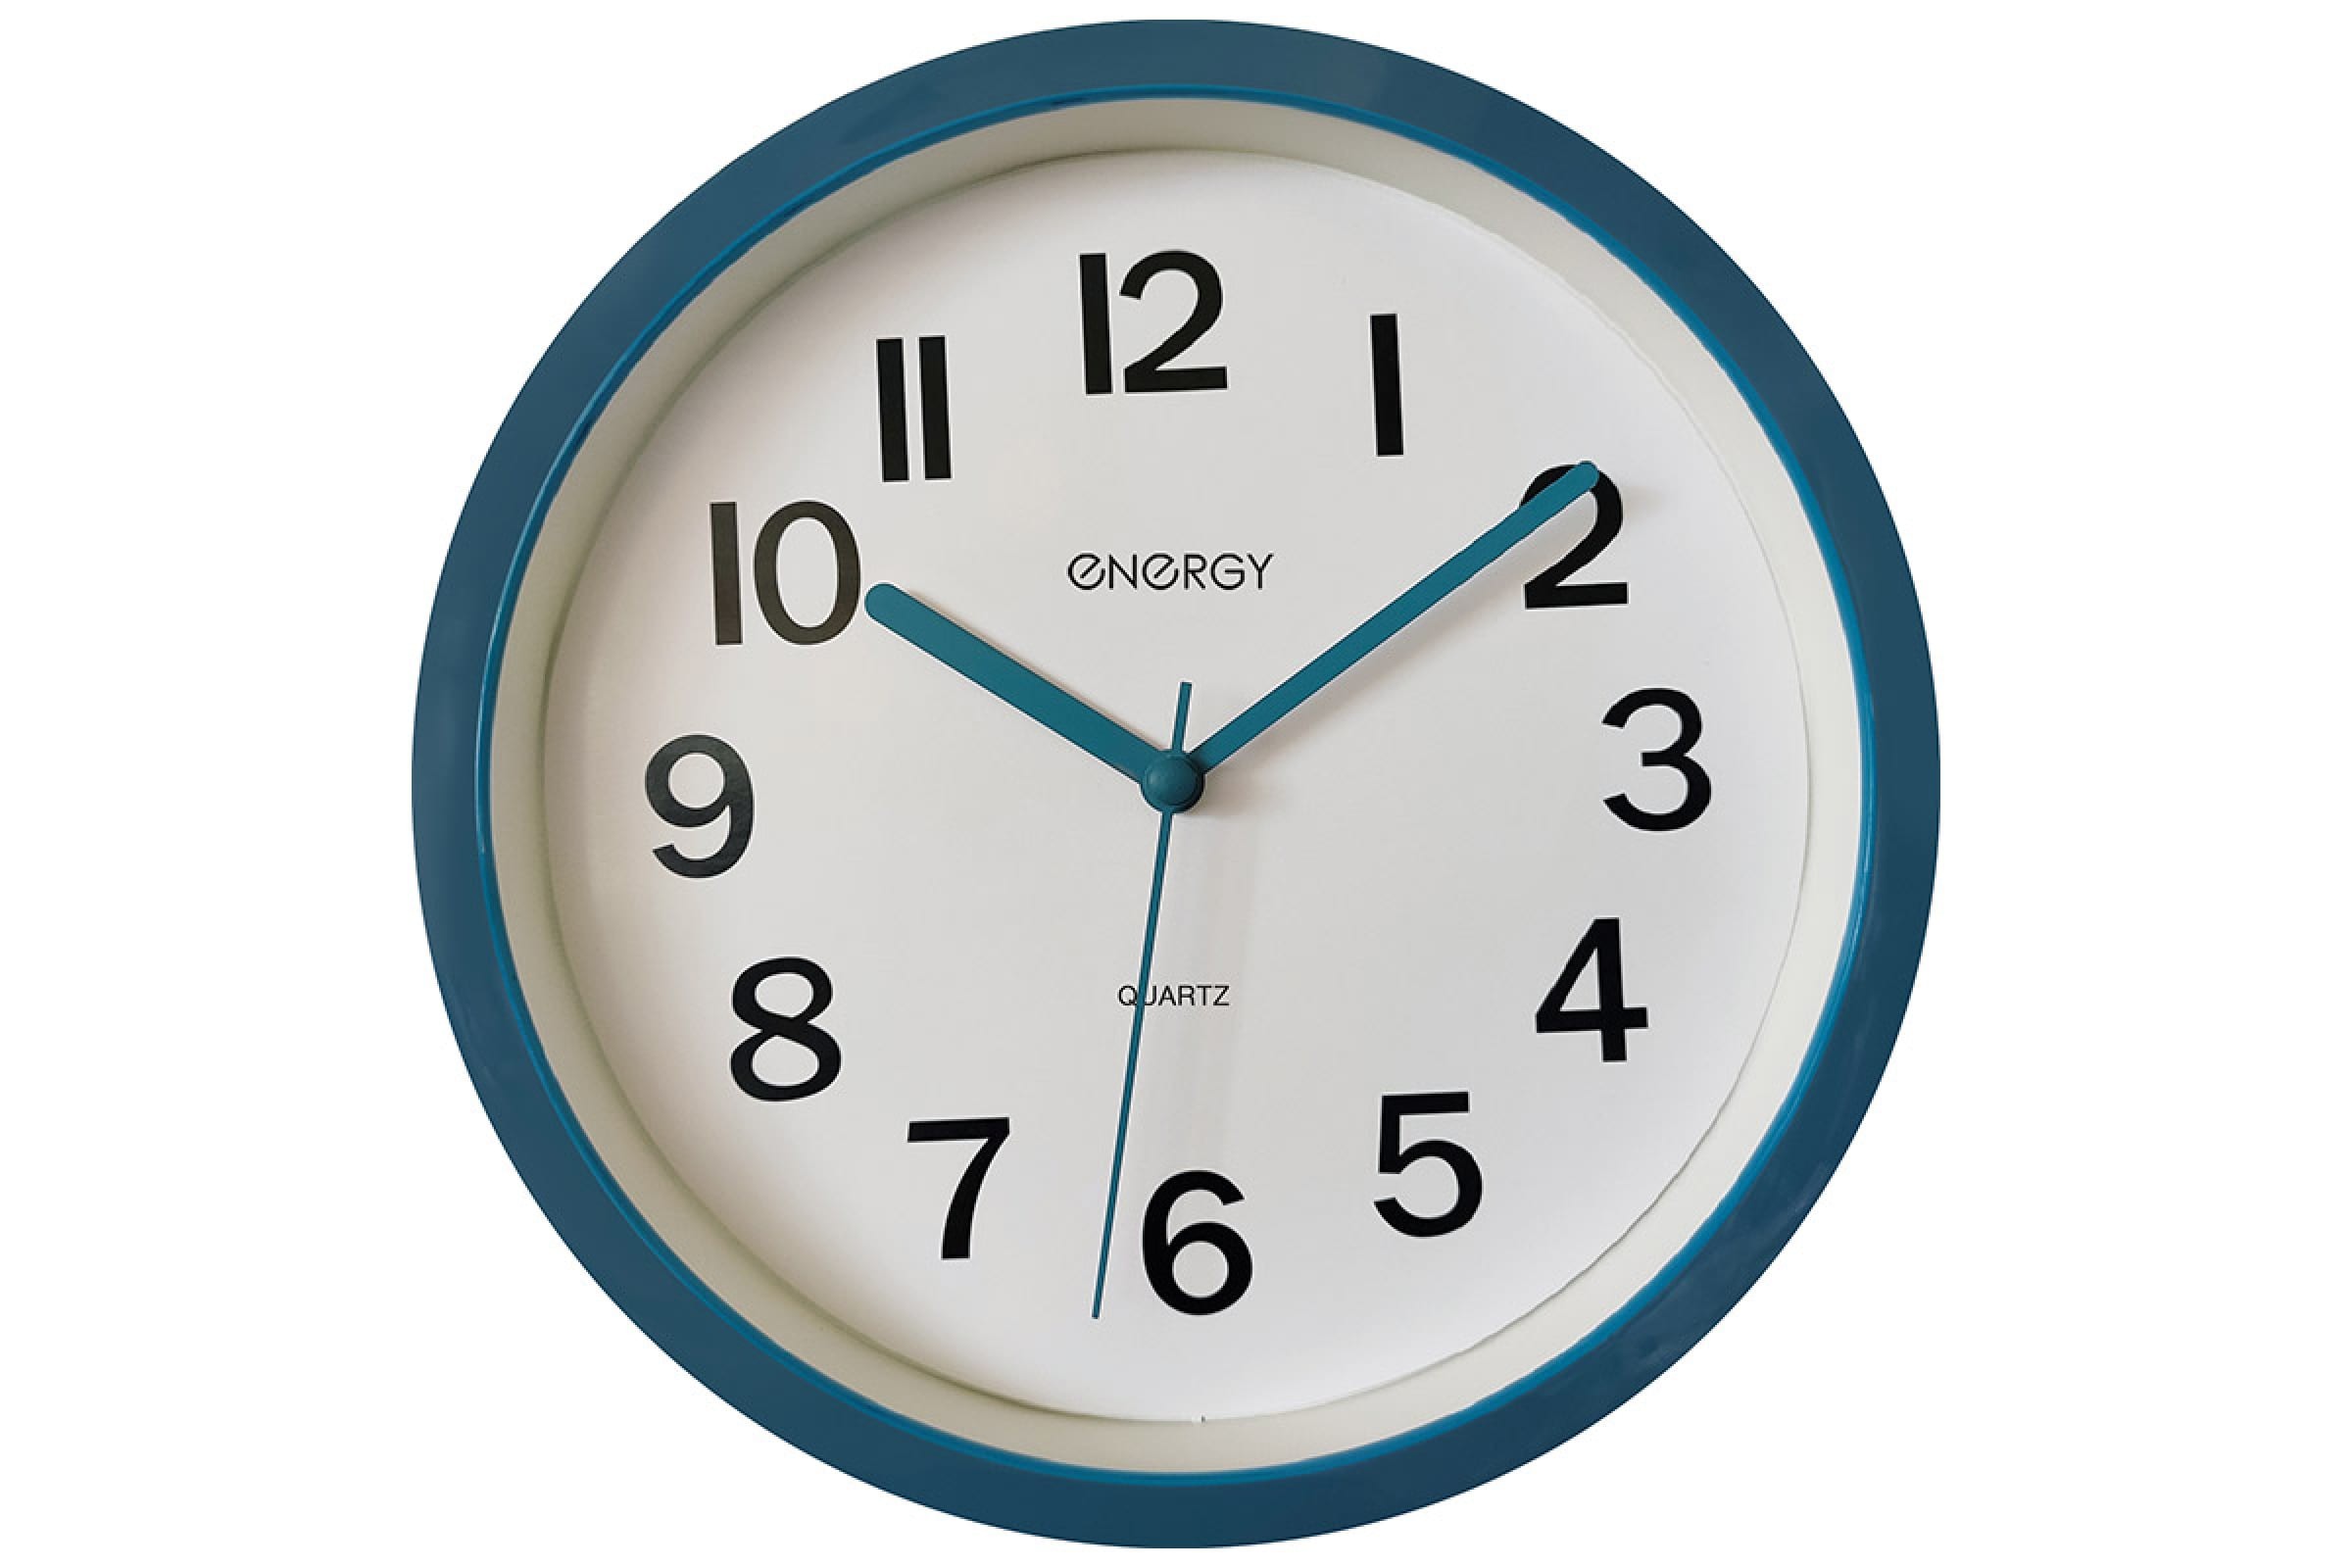 Настенные часы energy. Часы настенные Энерджи ЕС-139 синие. Часы настенные кварцевые Energy ЕС-100 зеленый. Часы настенные кварцевые Energy модель ЕС-15 многоугольные. Часы настенные кварцевые Engy модель ЕС-20 квадратные.